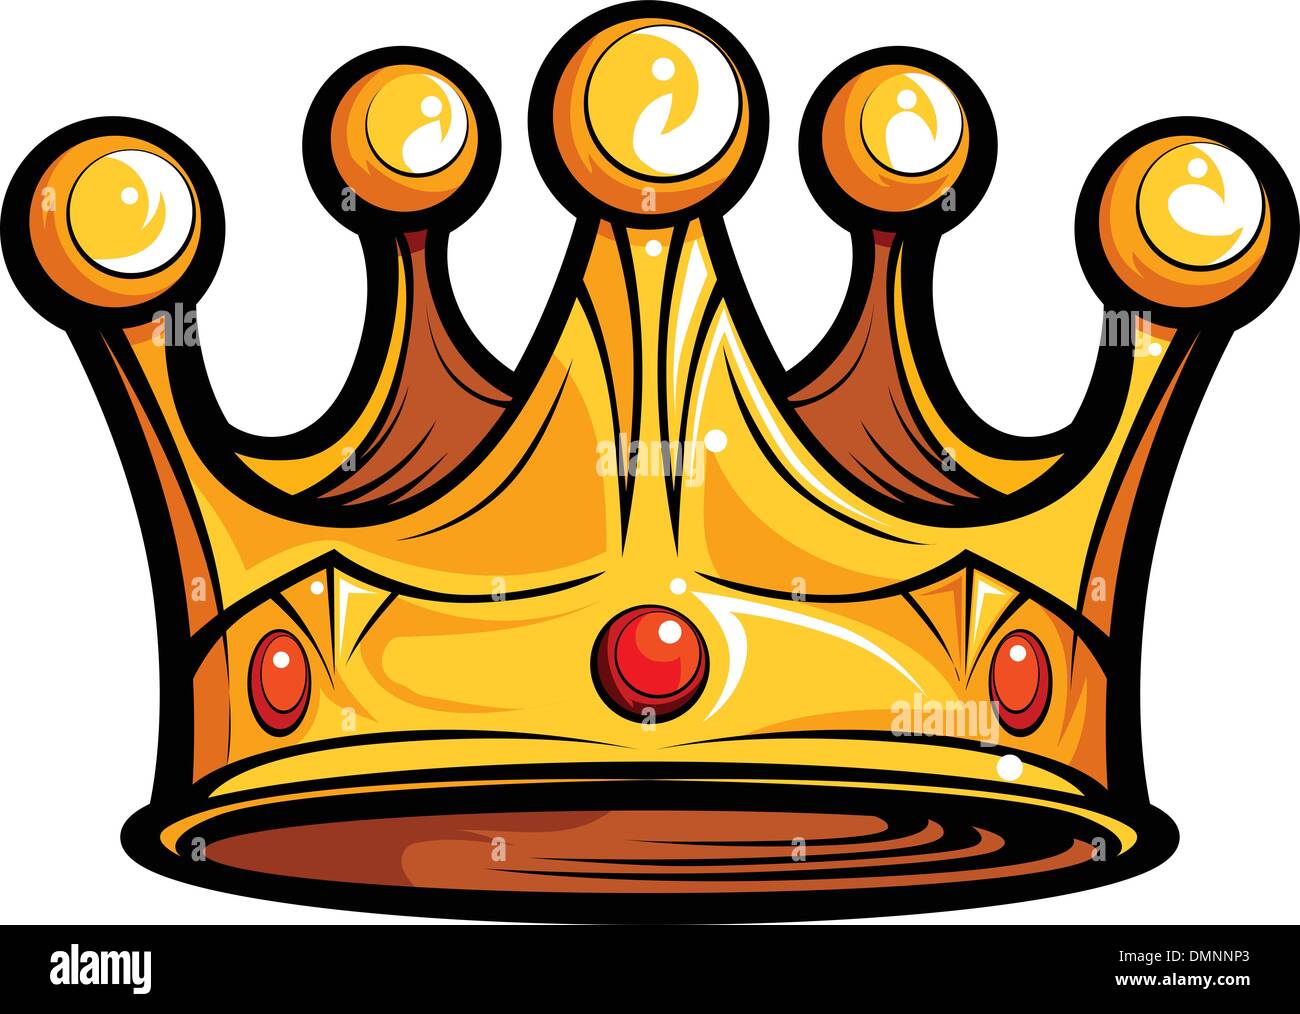 Lizenzgebühren oder Kings Crown-Cartoon-Vektor-Bild Stock Vektor